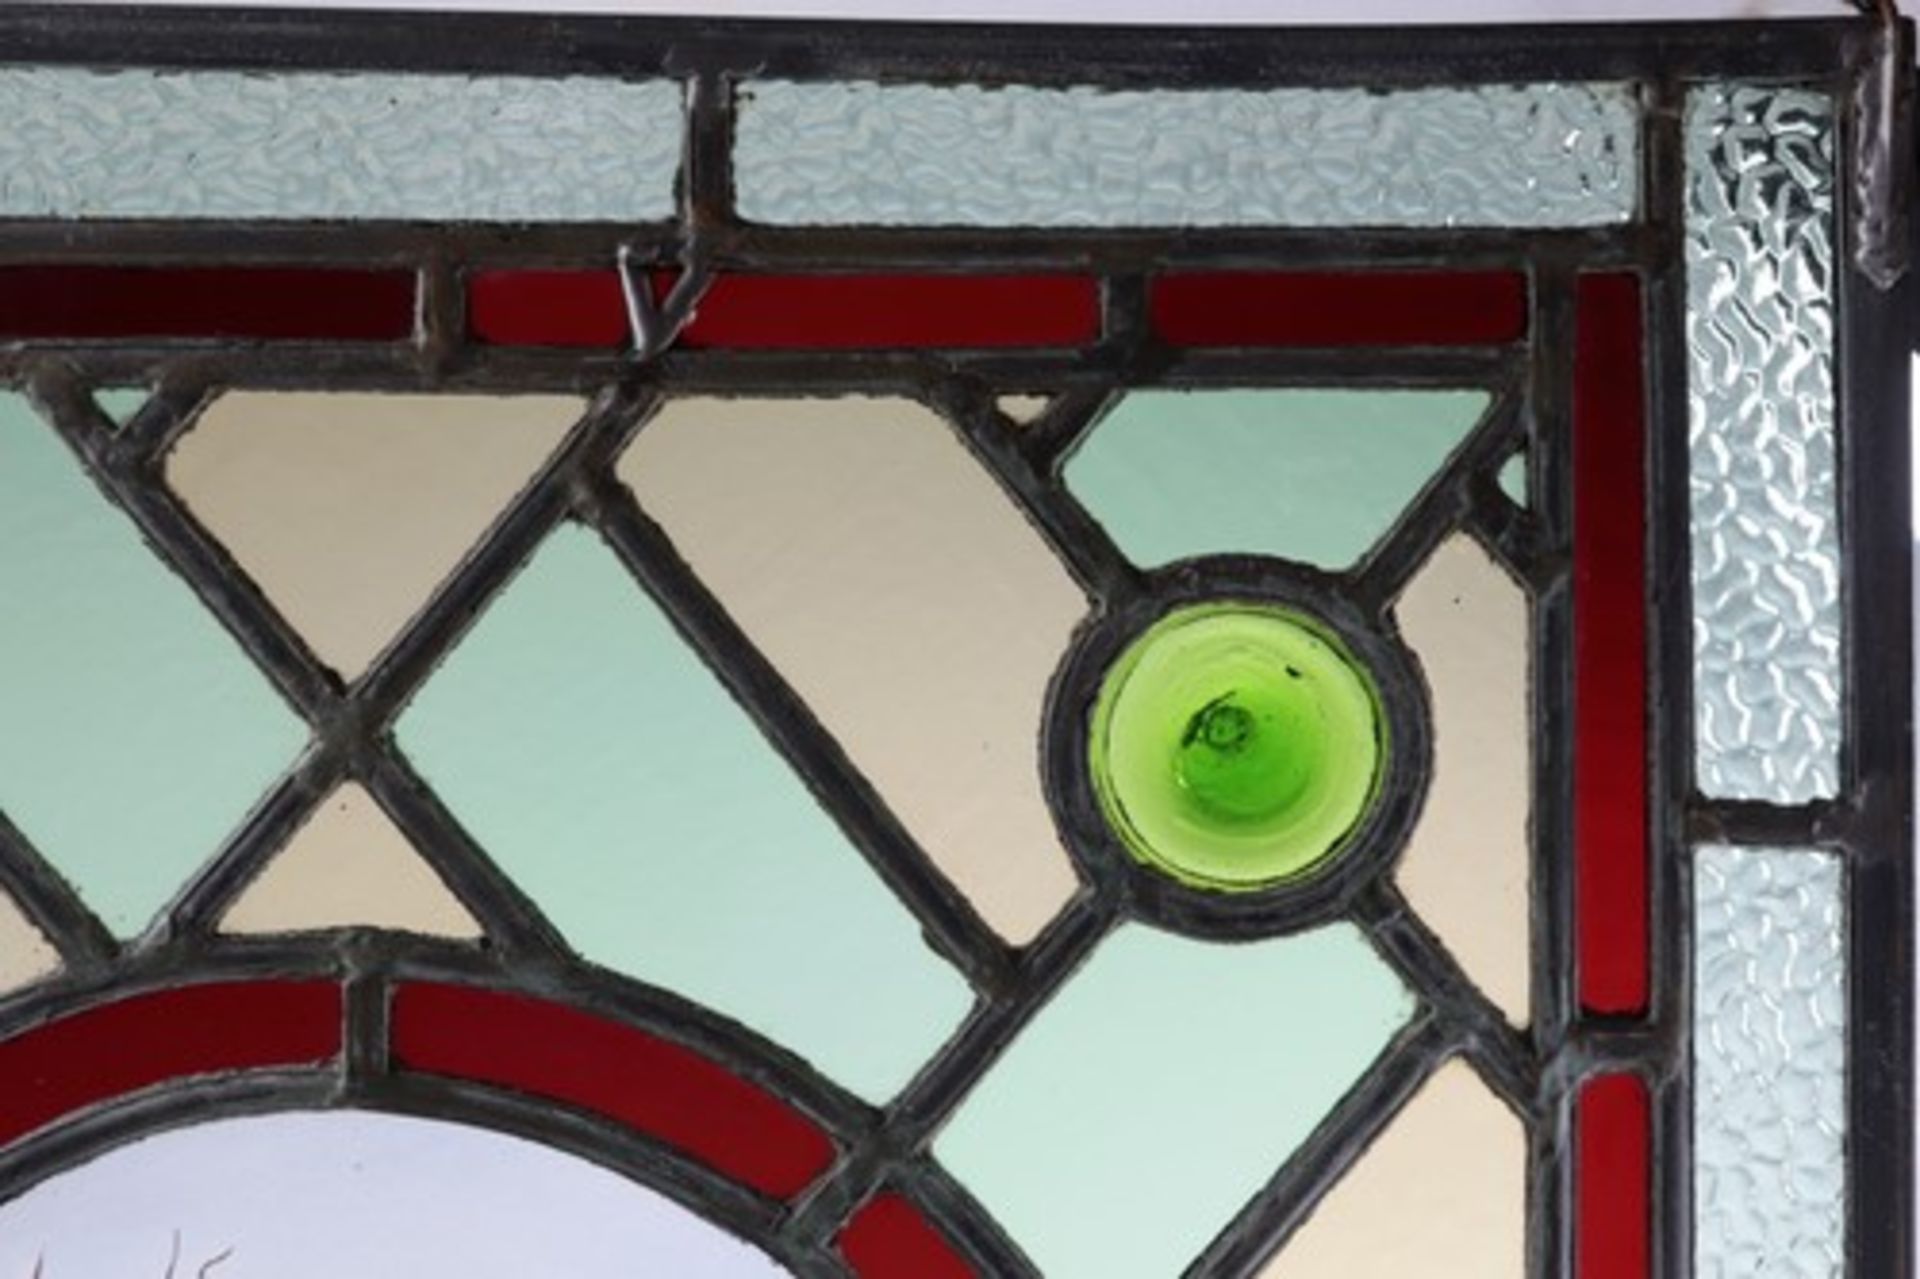 Glasfensterum 1900, farblose u. polychrome Bleiverglasung in rechteckiger Metallrahmung, außen - Bild 3 aus 3